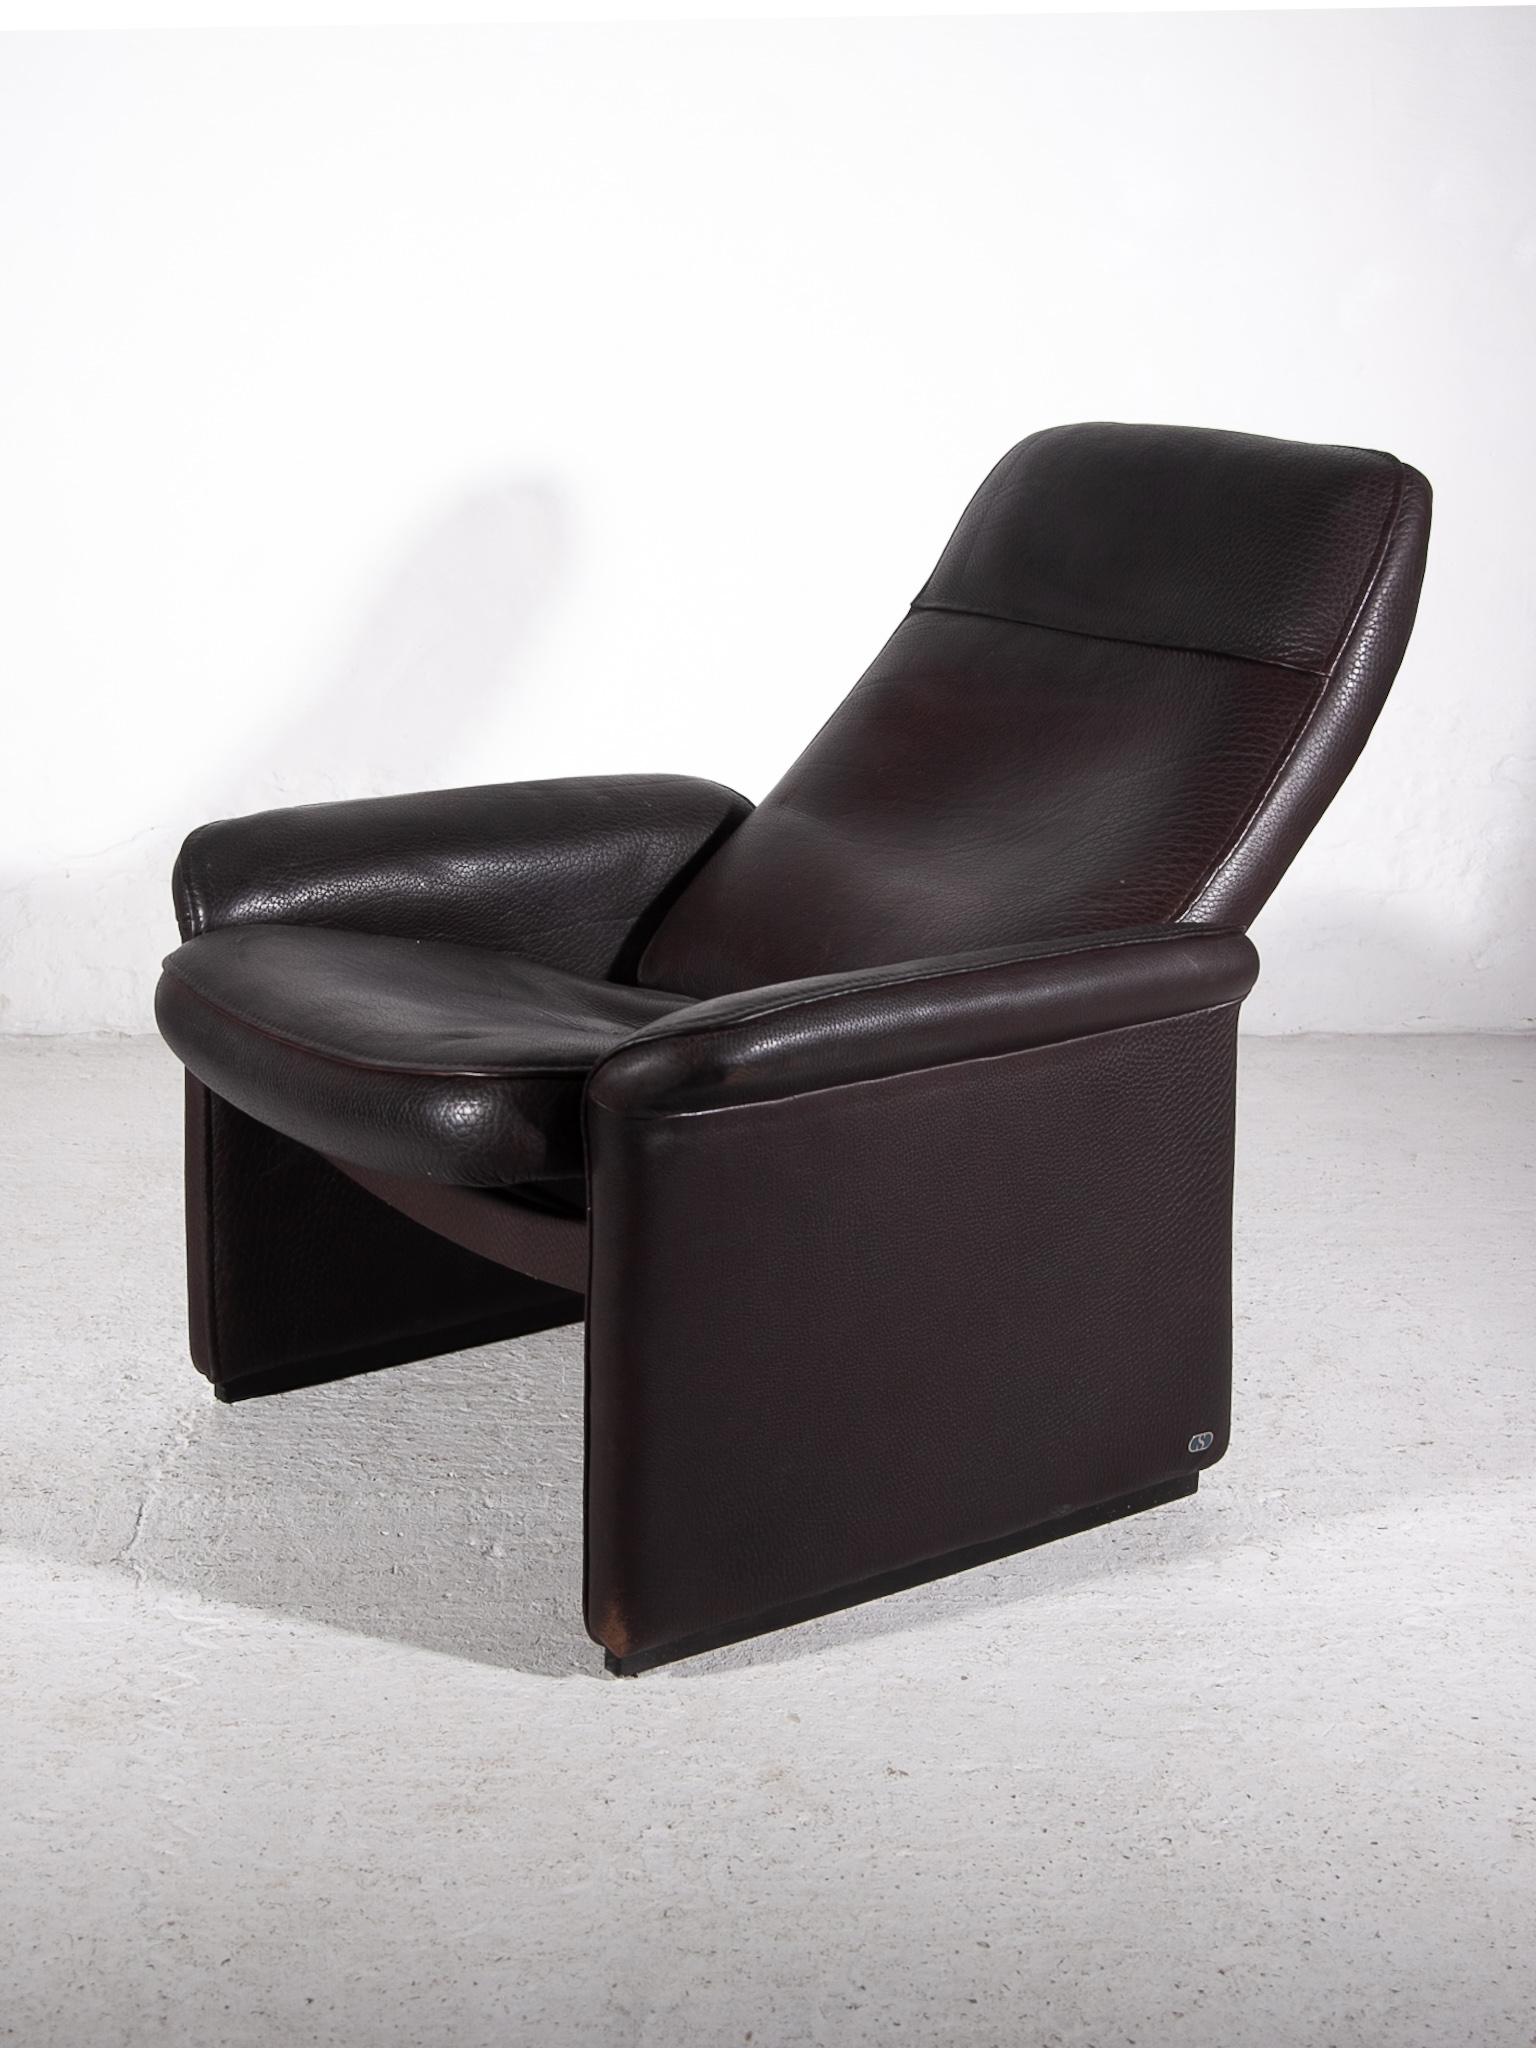 De Sede Lounge Recliner Chair DS-50 Fauteuil, 1970s For Sale 2